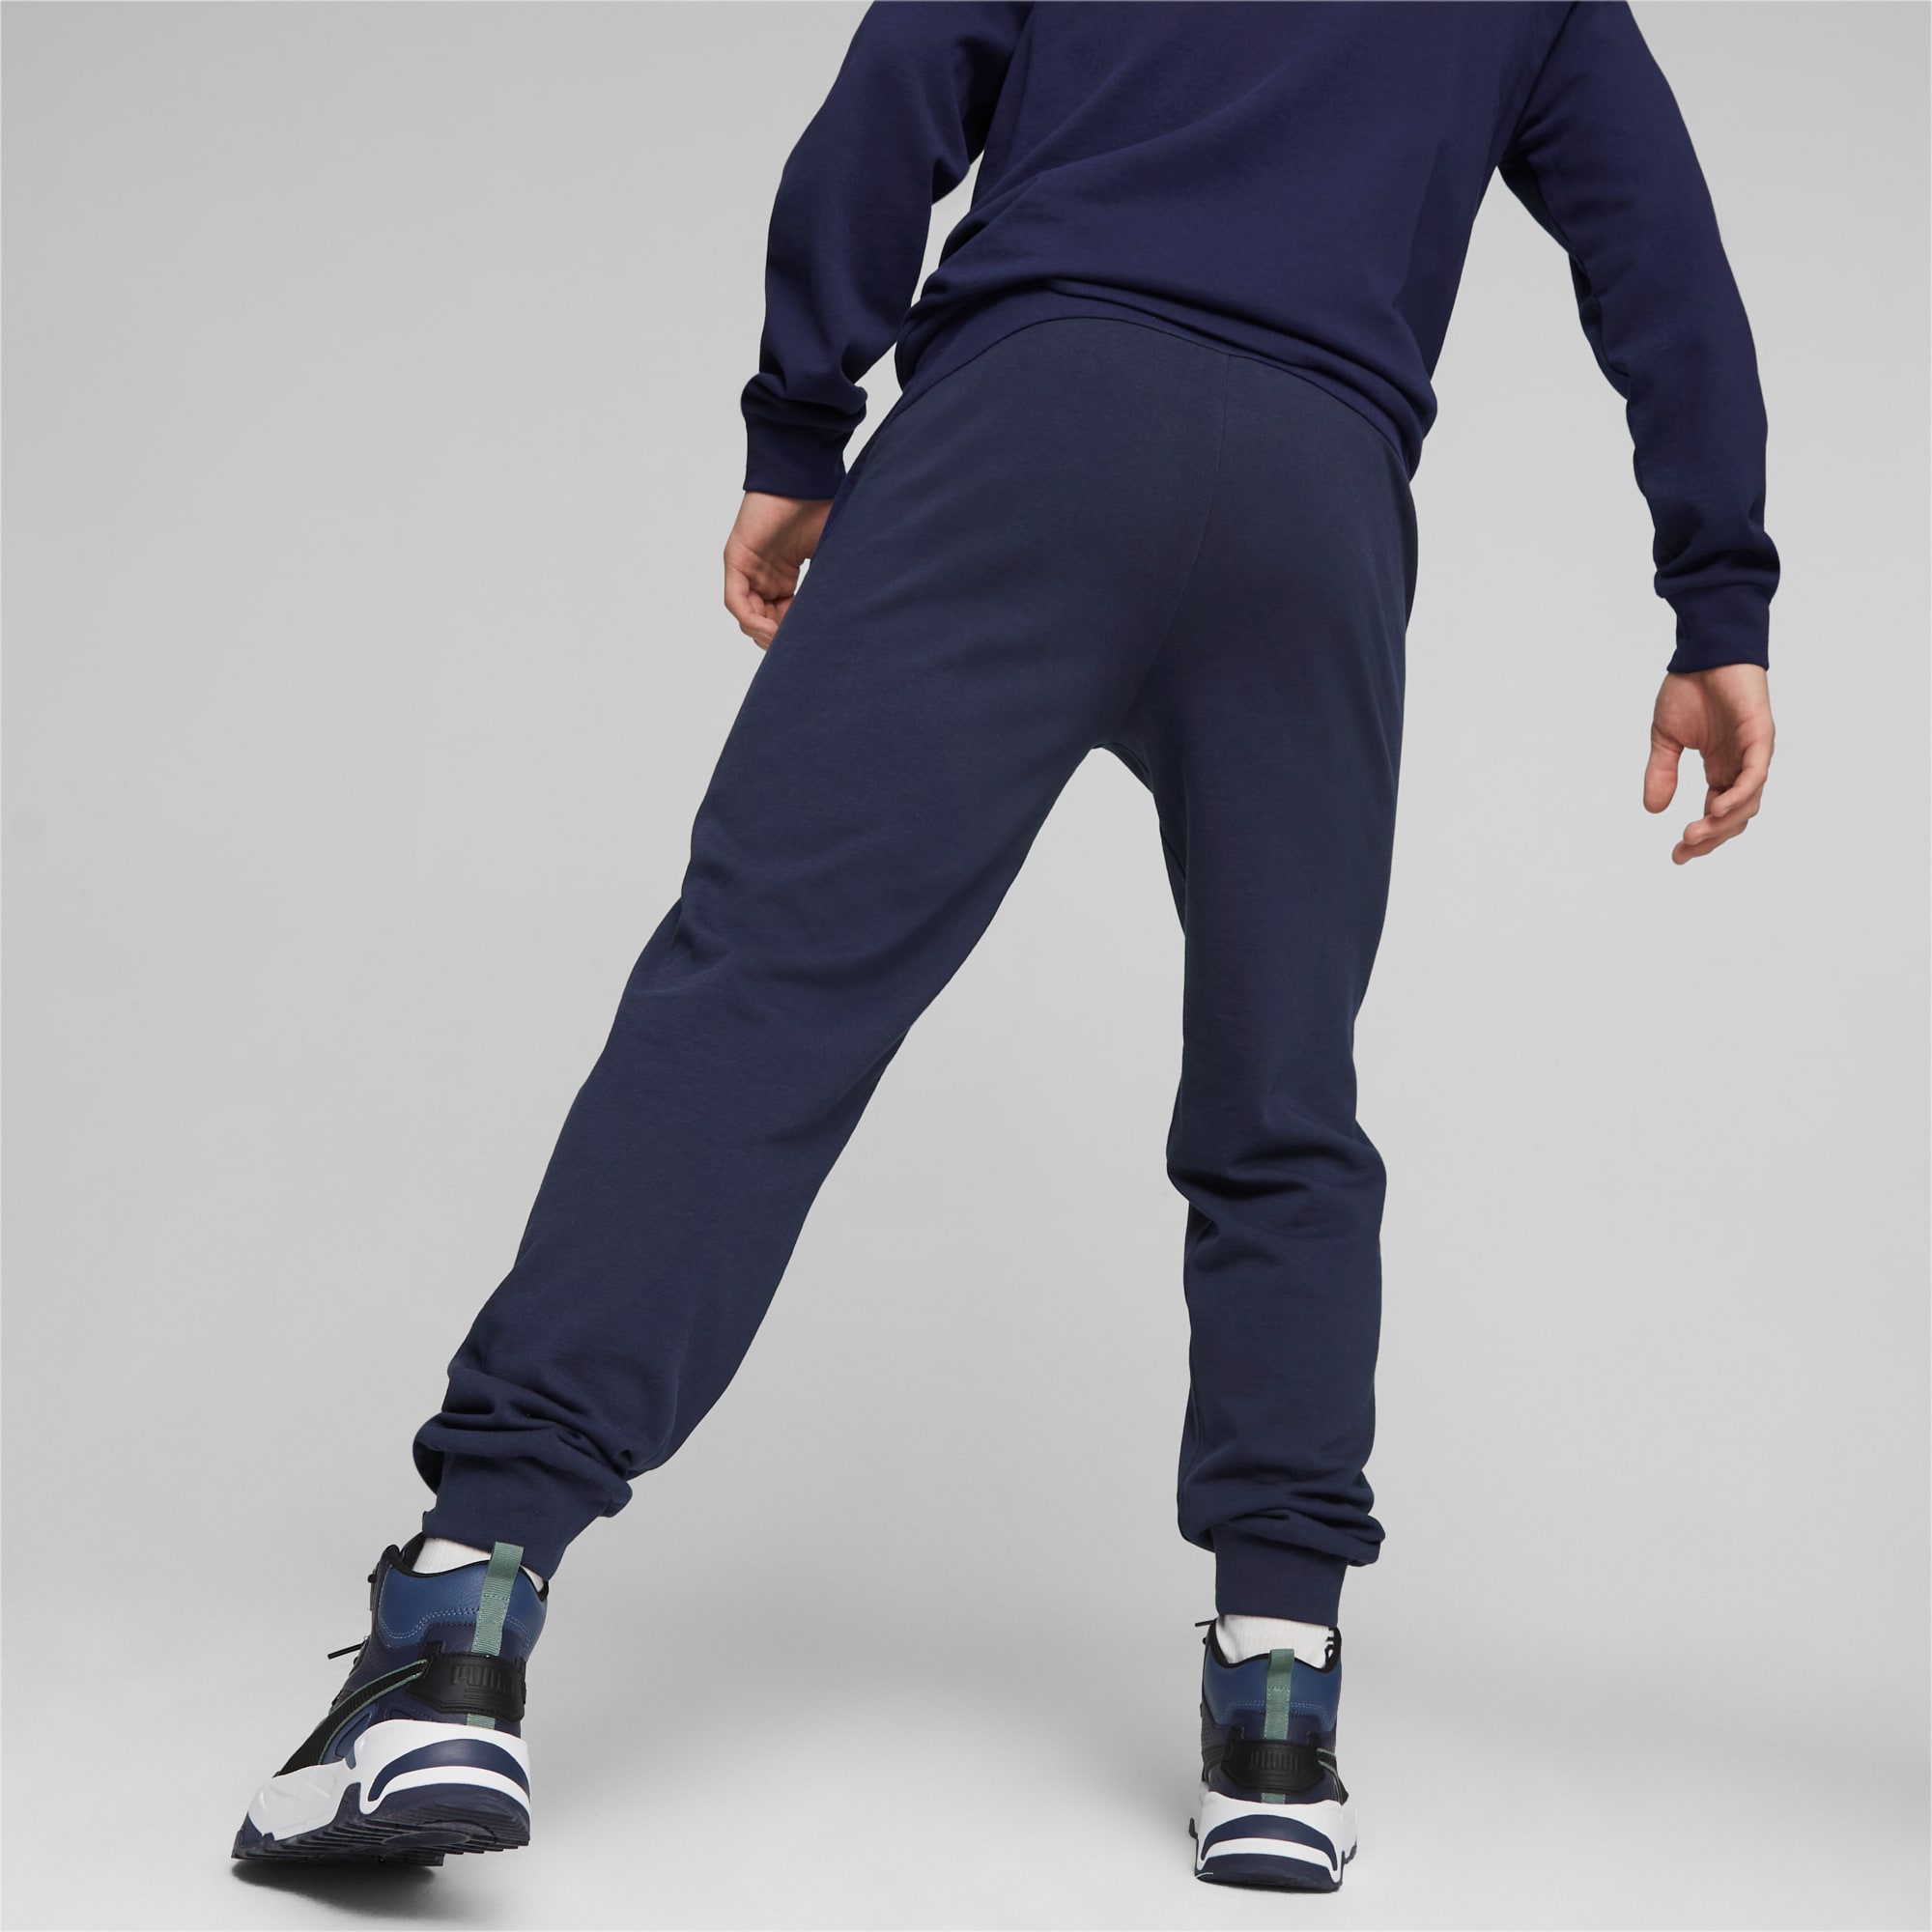 PUMA Better Sportswear Men's Sweatpants, Dark Blue